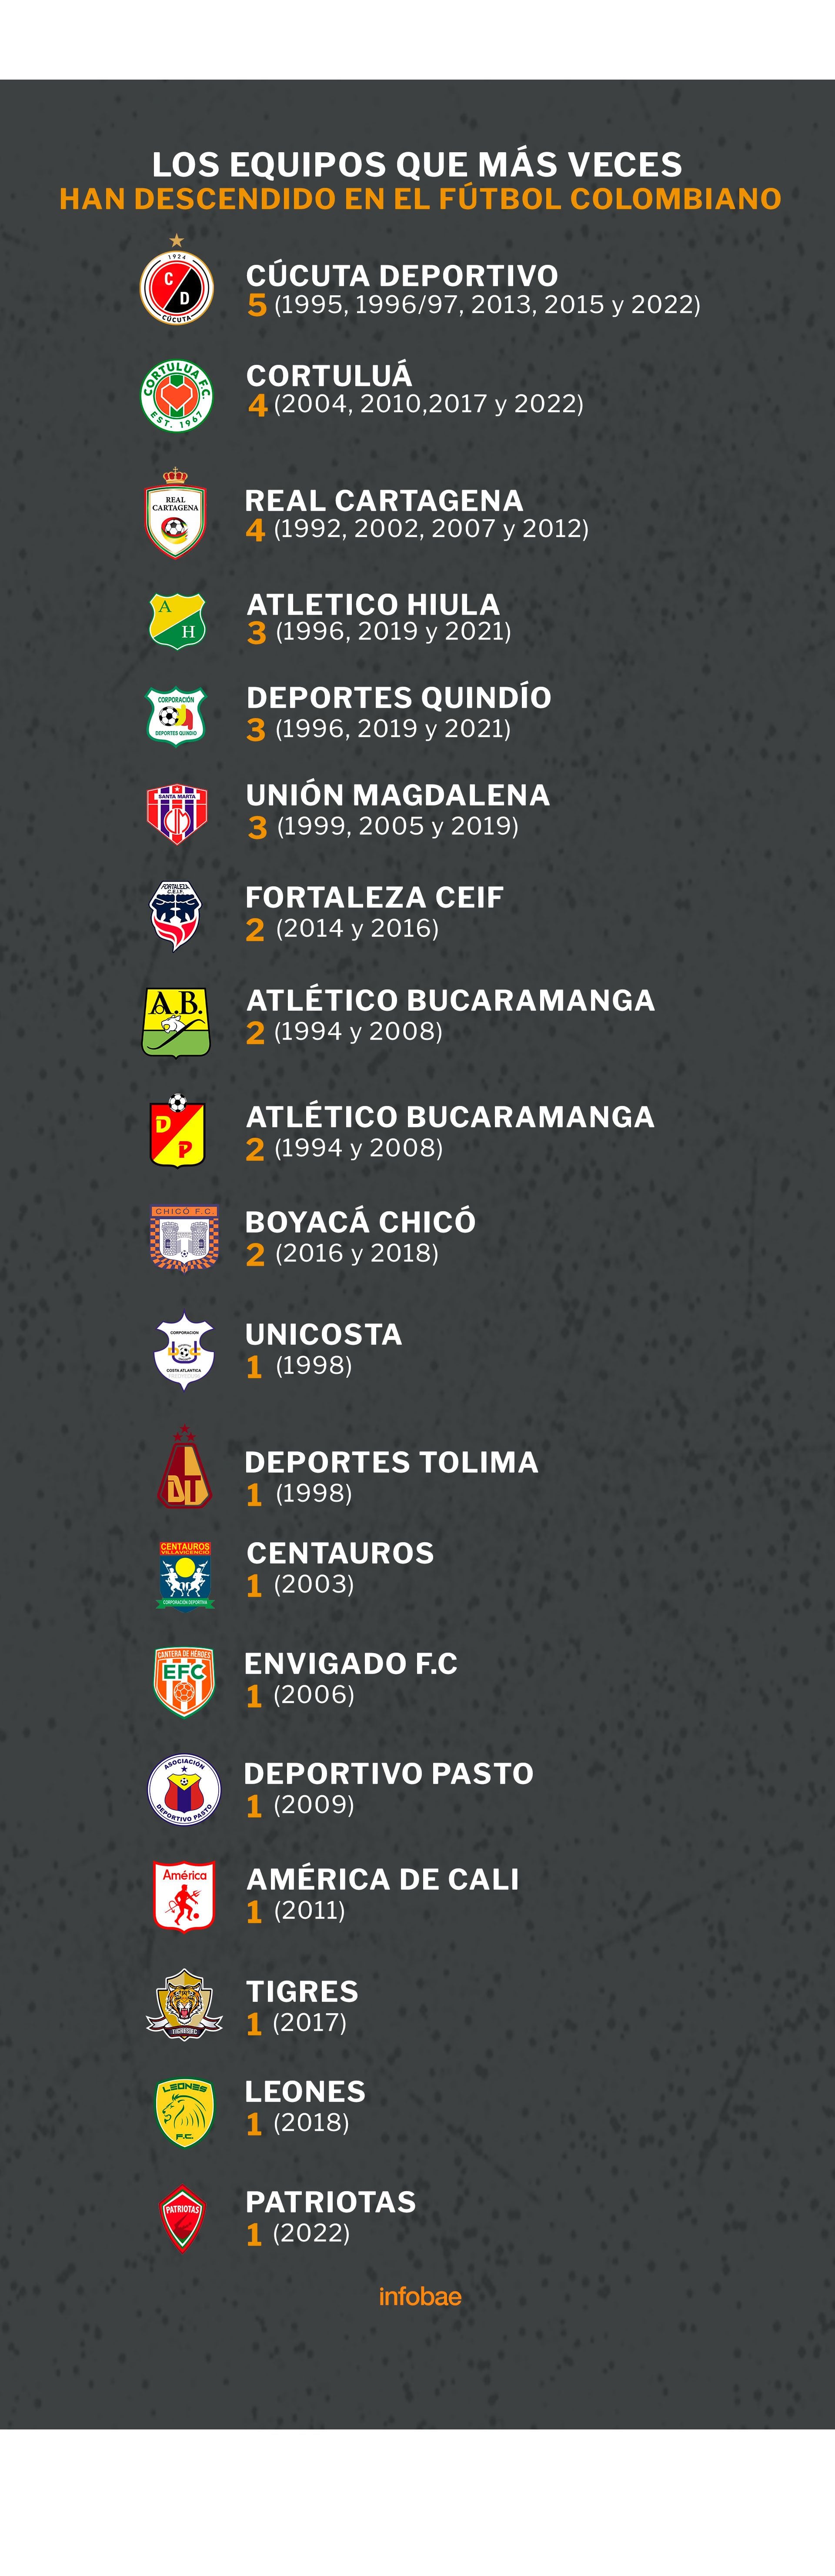 Así quedó el ranking de los equipos que más veces han descendido en el fútbol colombiano

Ilustración: Jesús Avilés